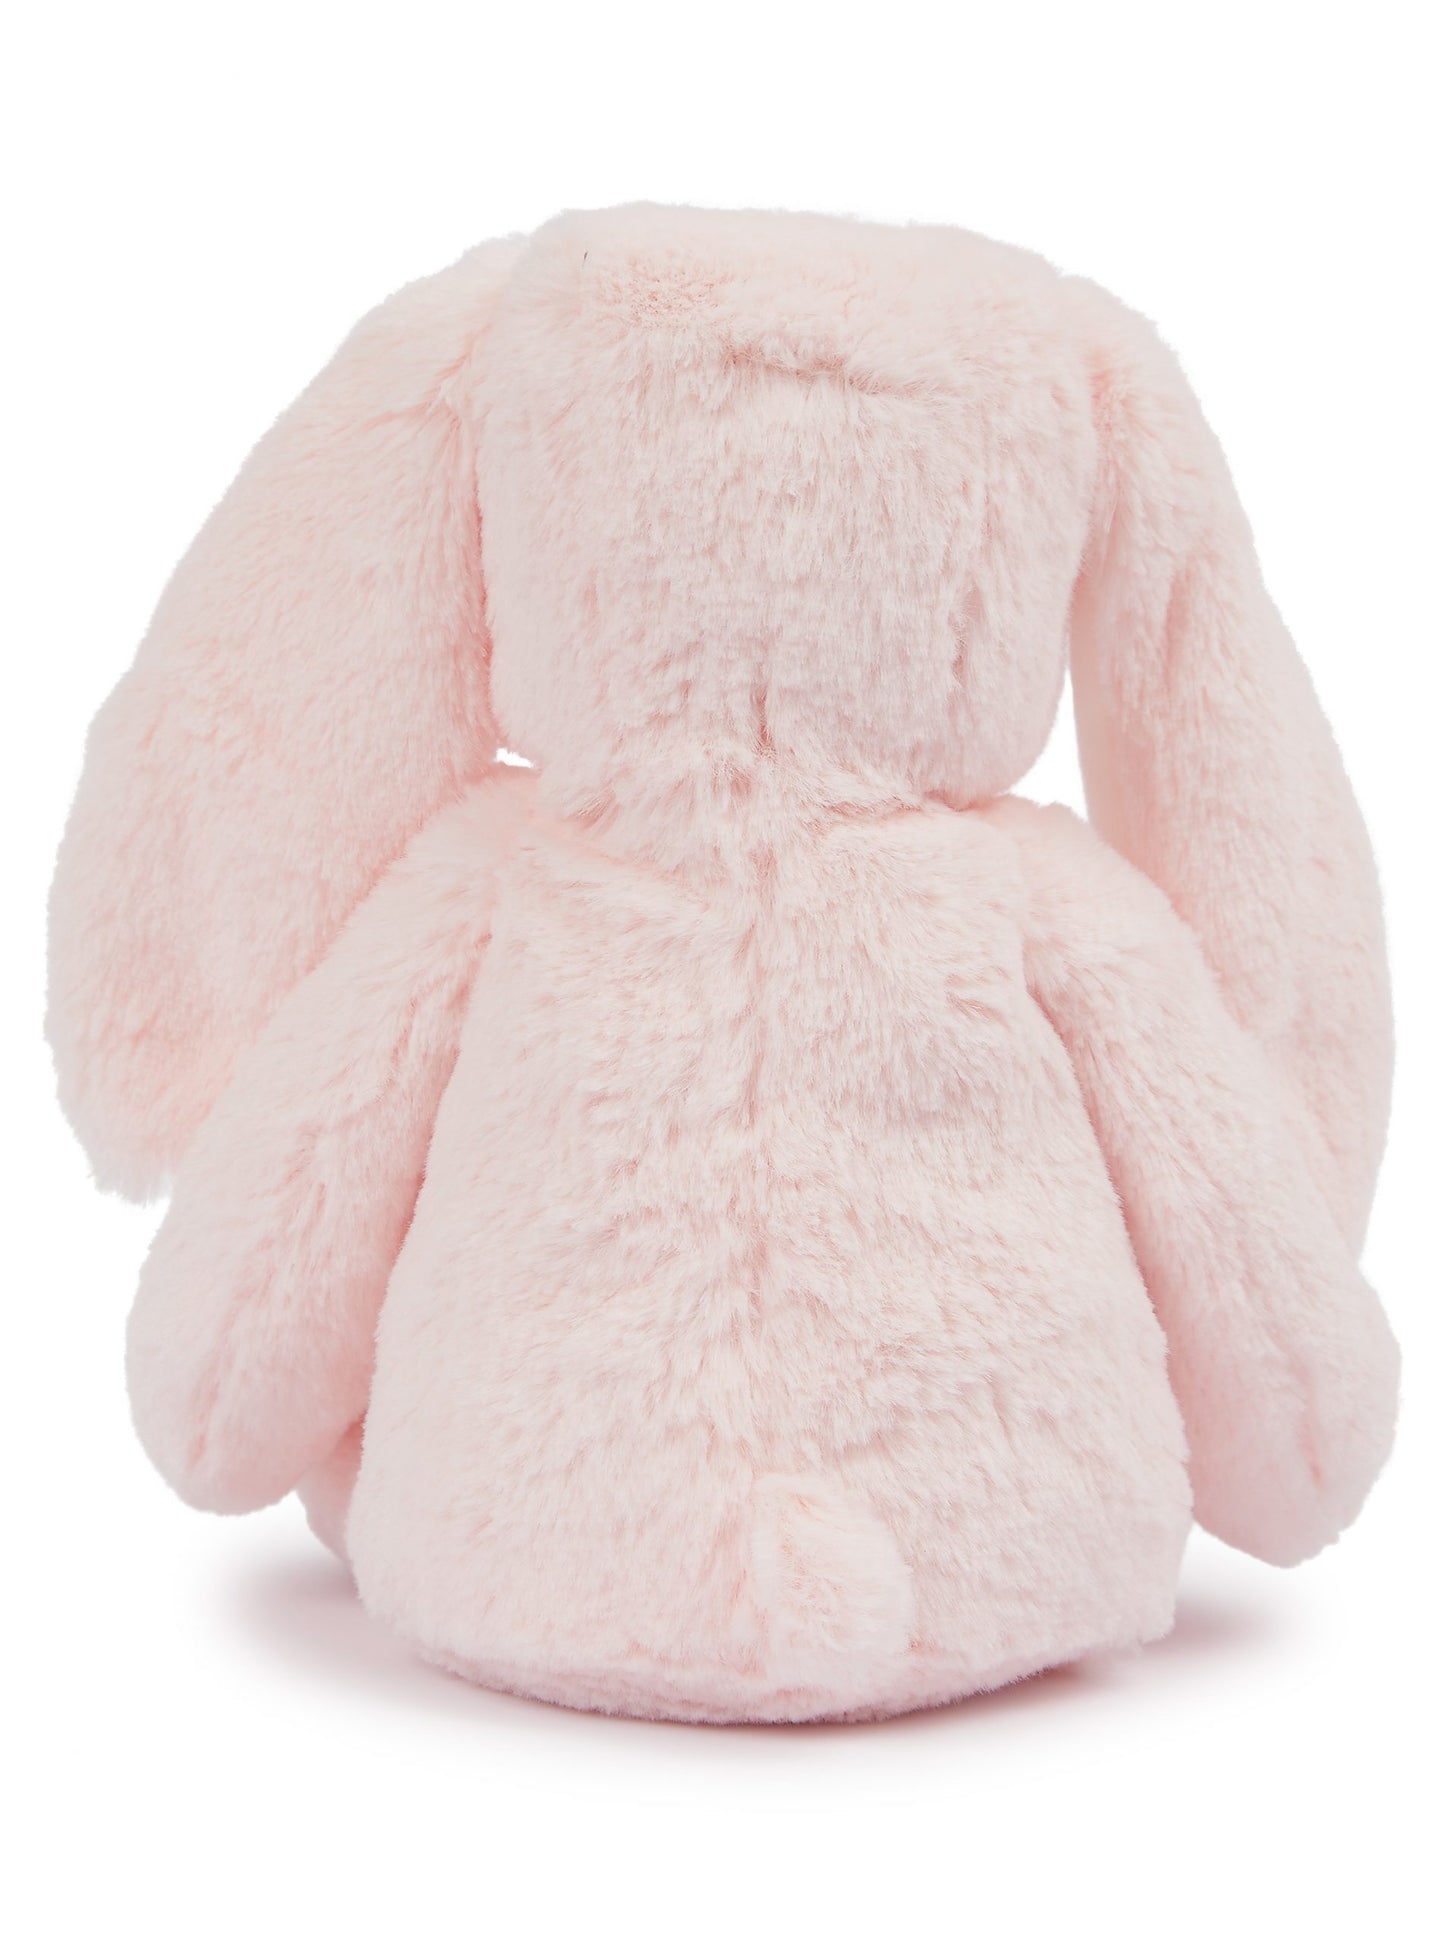 Pink bunny - MM060 PRINTME